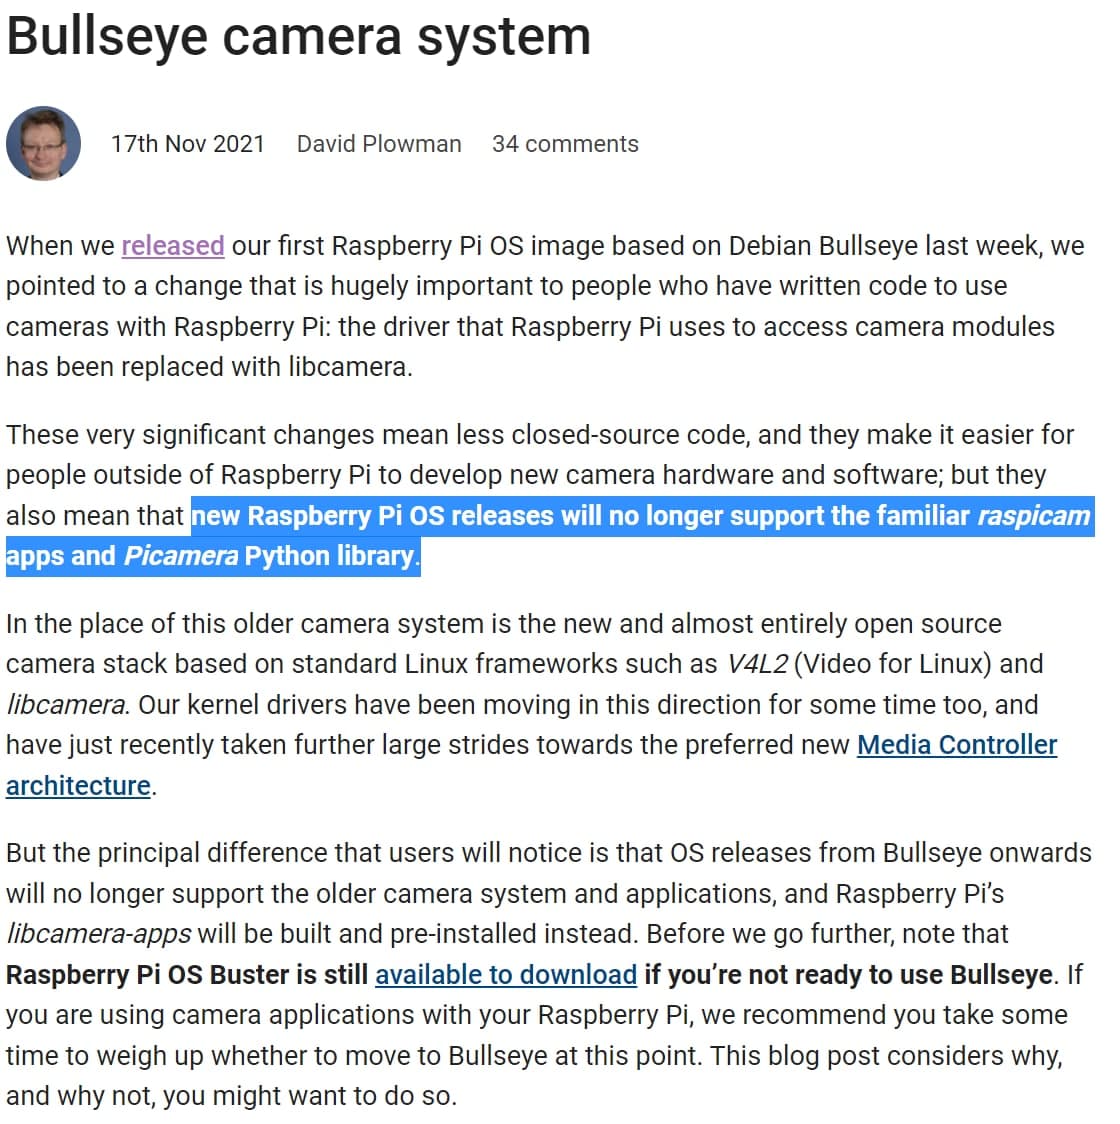 bullseye camerasystem 17nov21